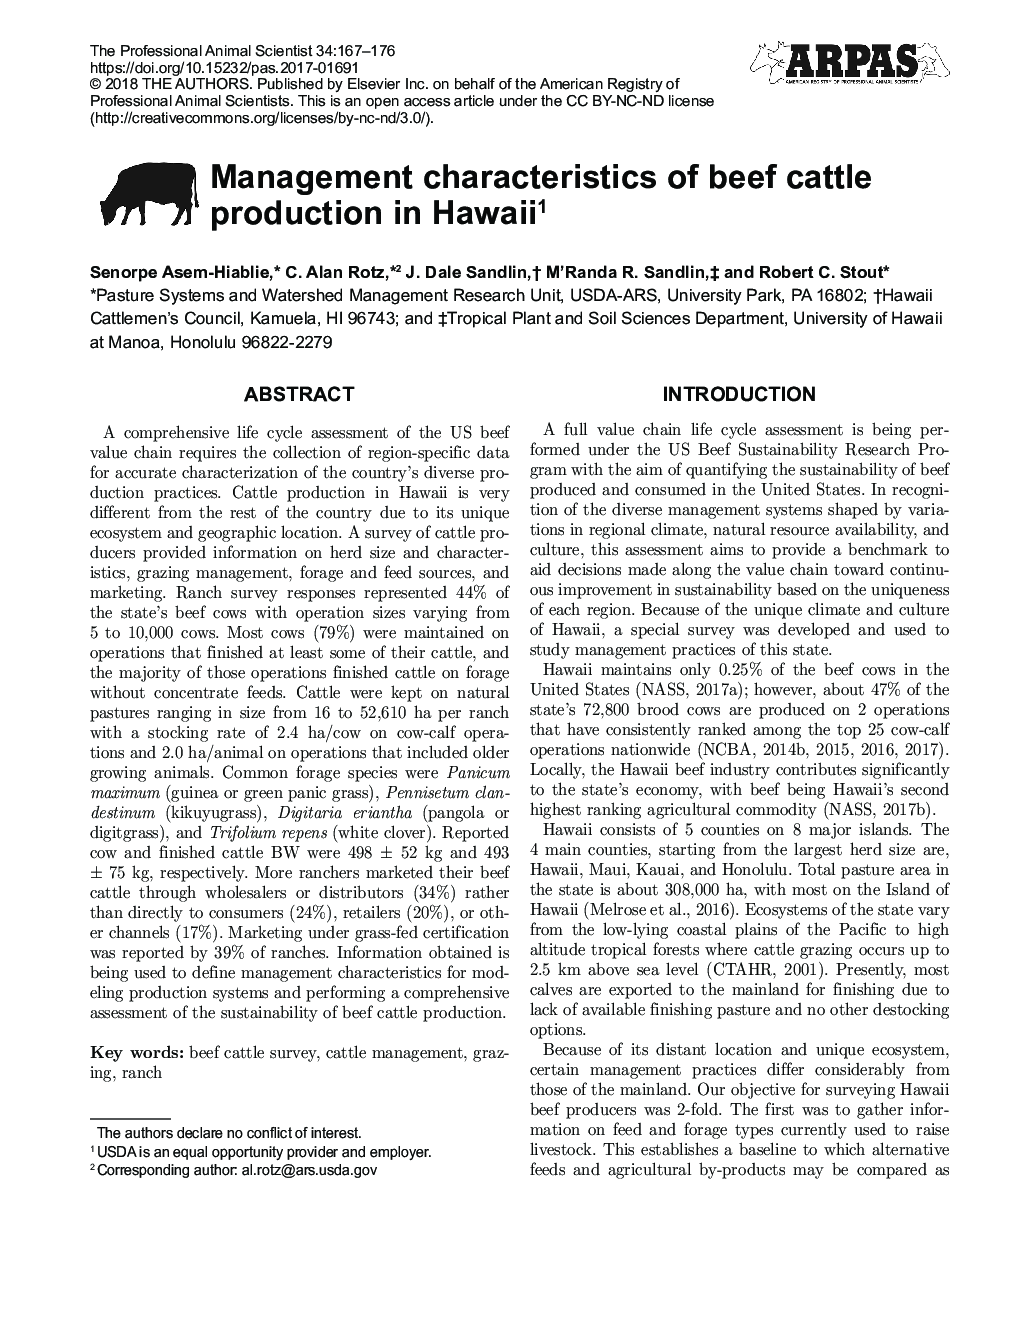 ویژگی های مدیریت تولید گاو گوشتی در هاوایی 1 